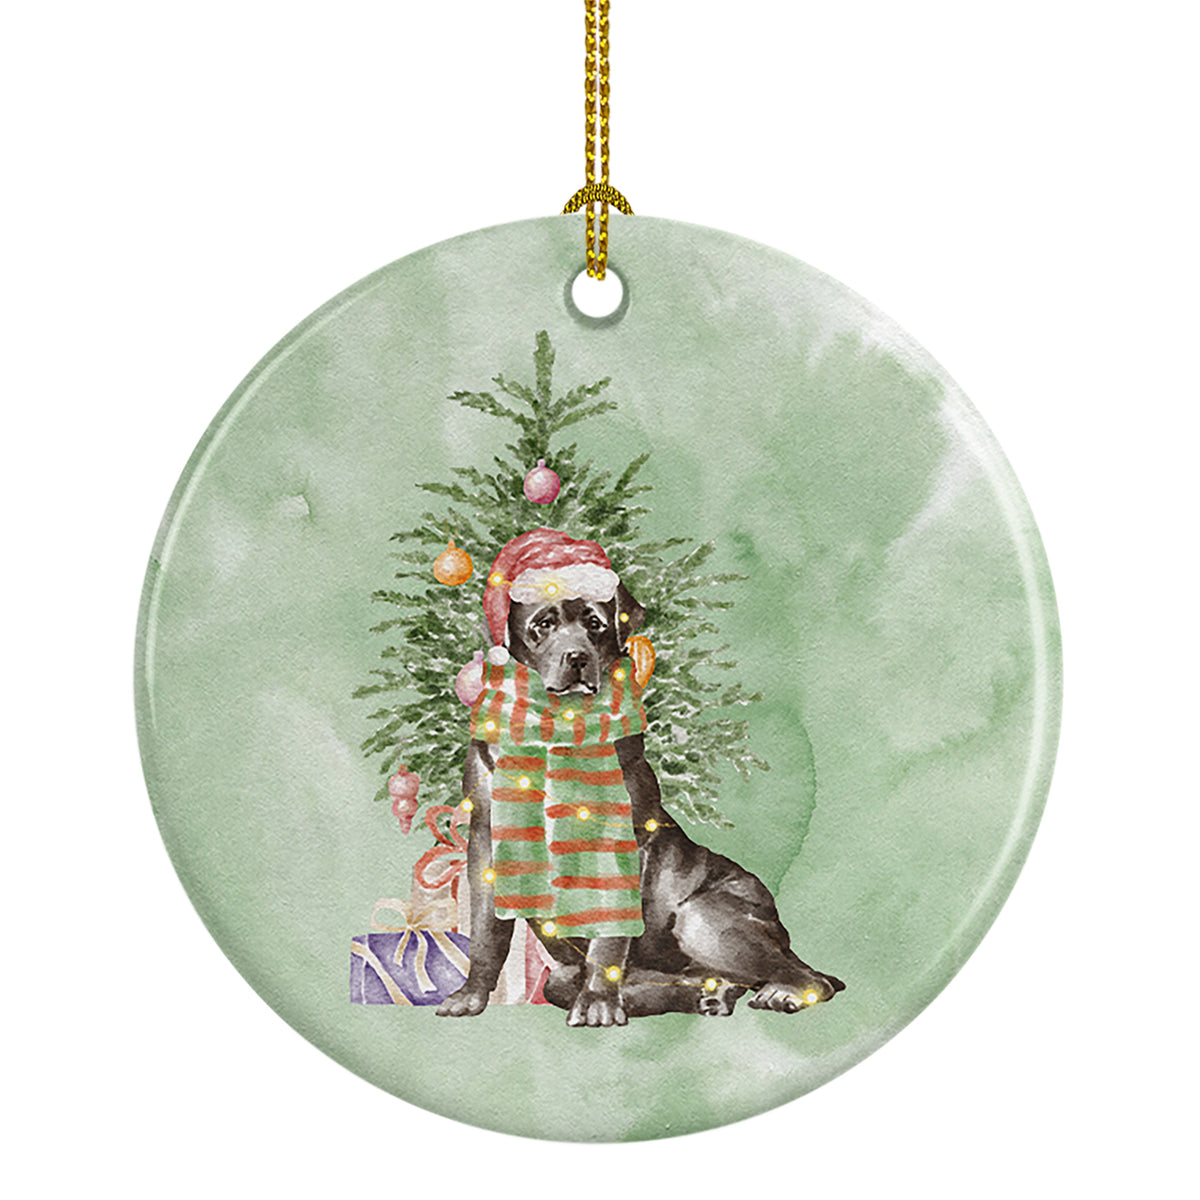 Buy this Christmas Black Labrador Retriever Ceramic Ornament